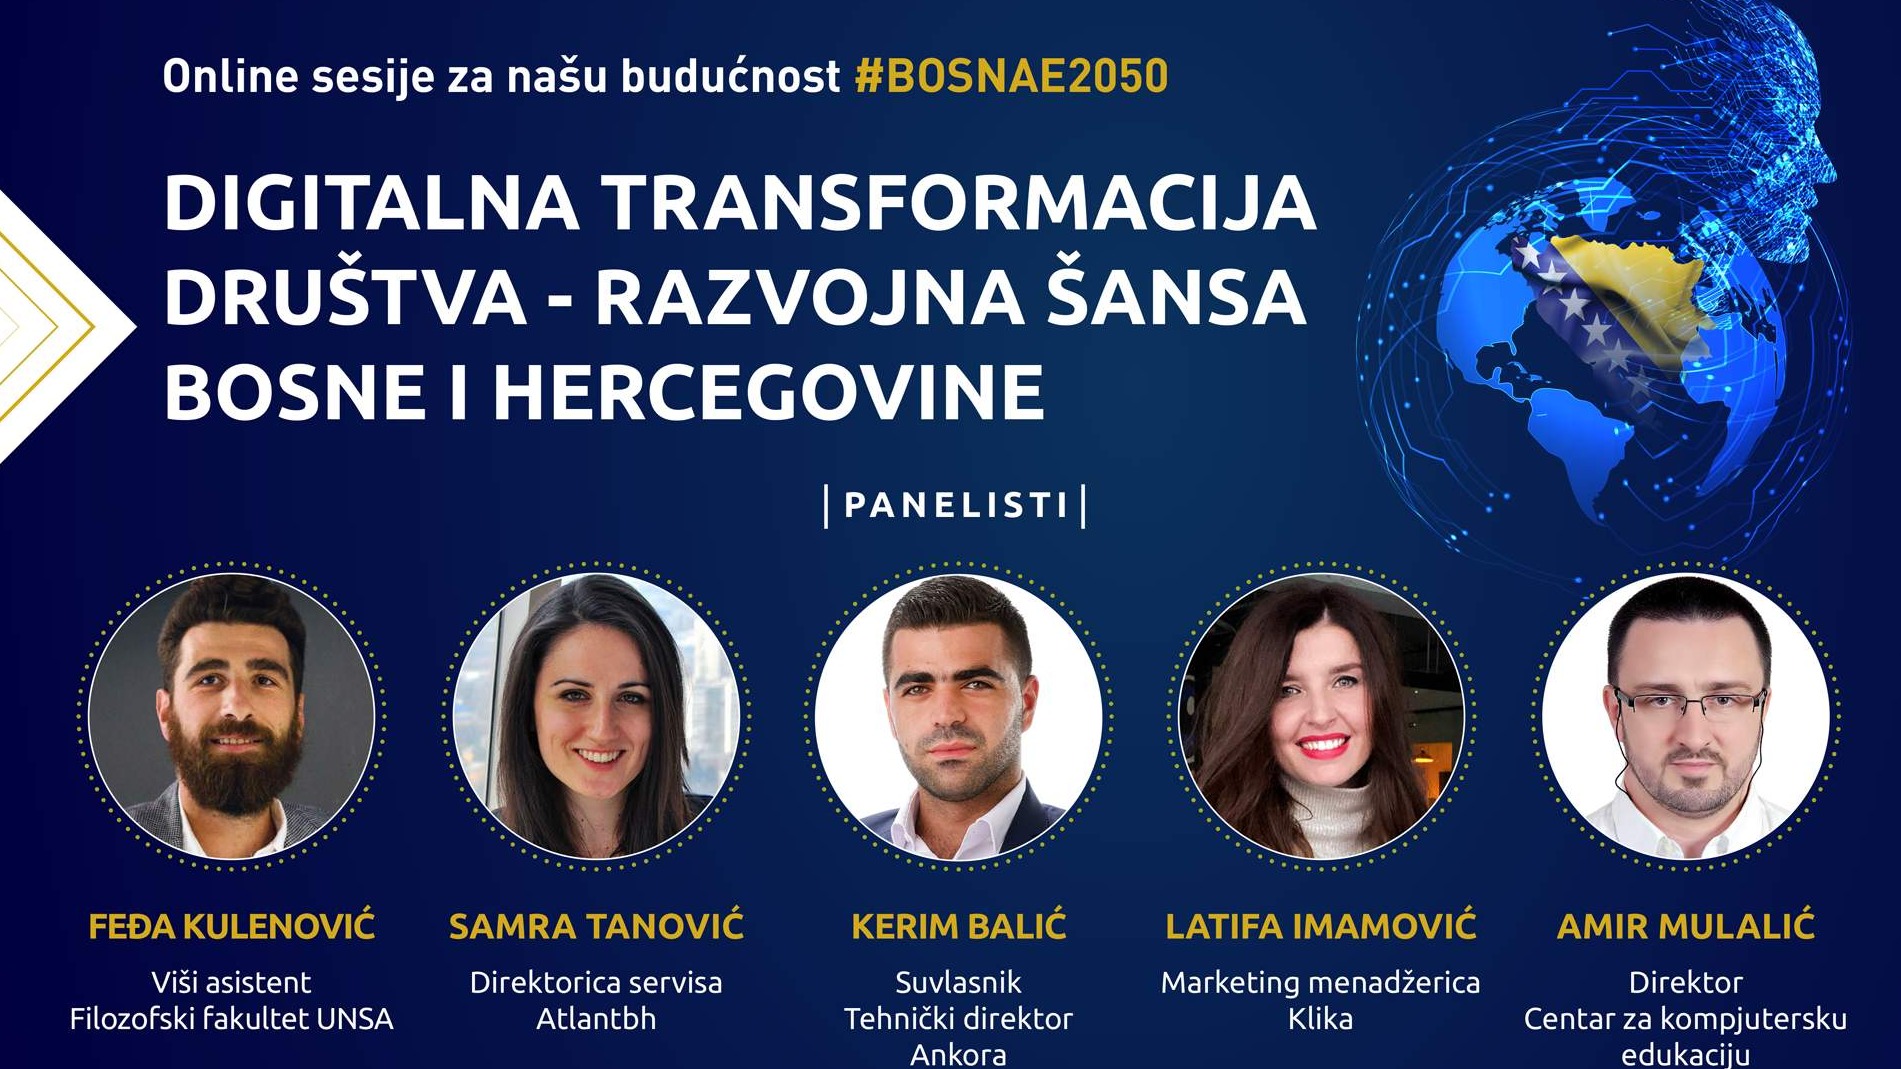 Alumni PBG: Održana druga sesija u okviru projekta #Bosnae2050? o digitalnoj transformaciji